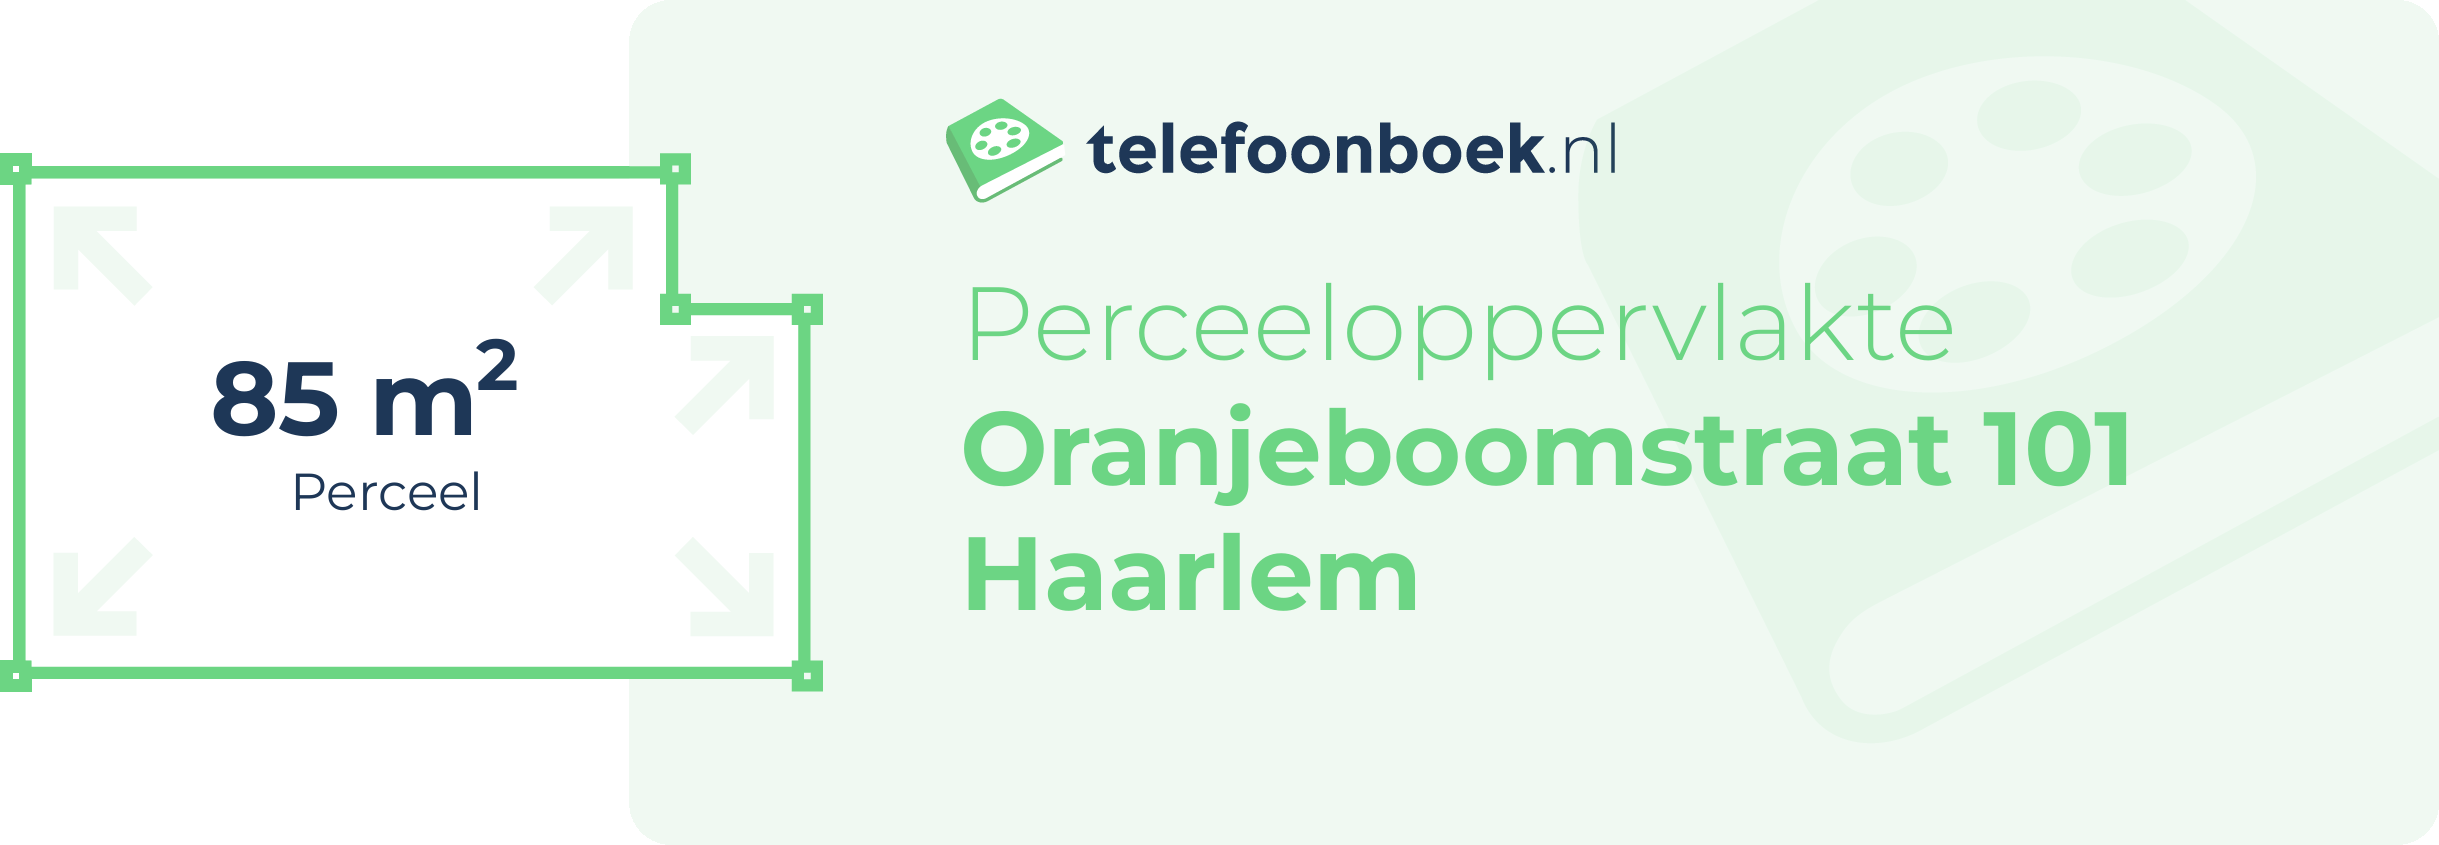 Perceeloppervlakte Oranjeboomstraat 101 Haarlem